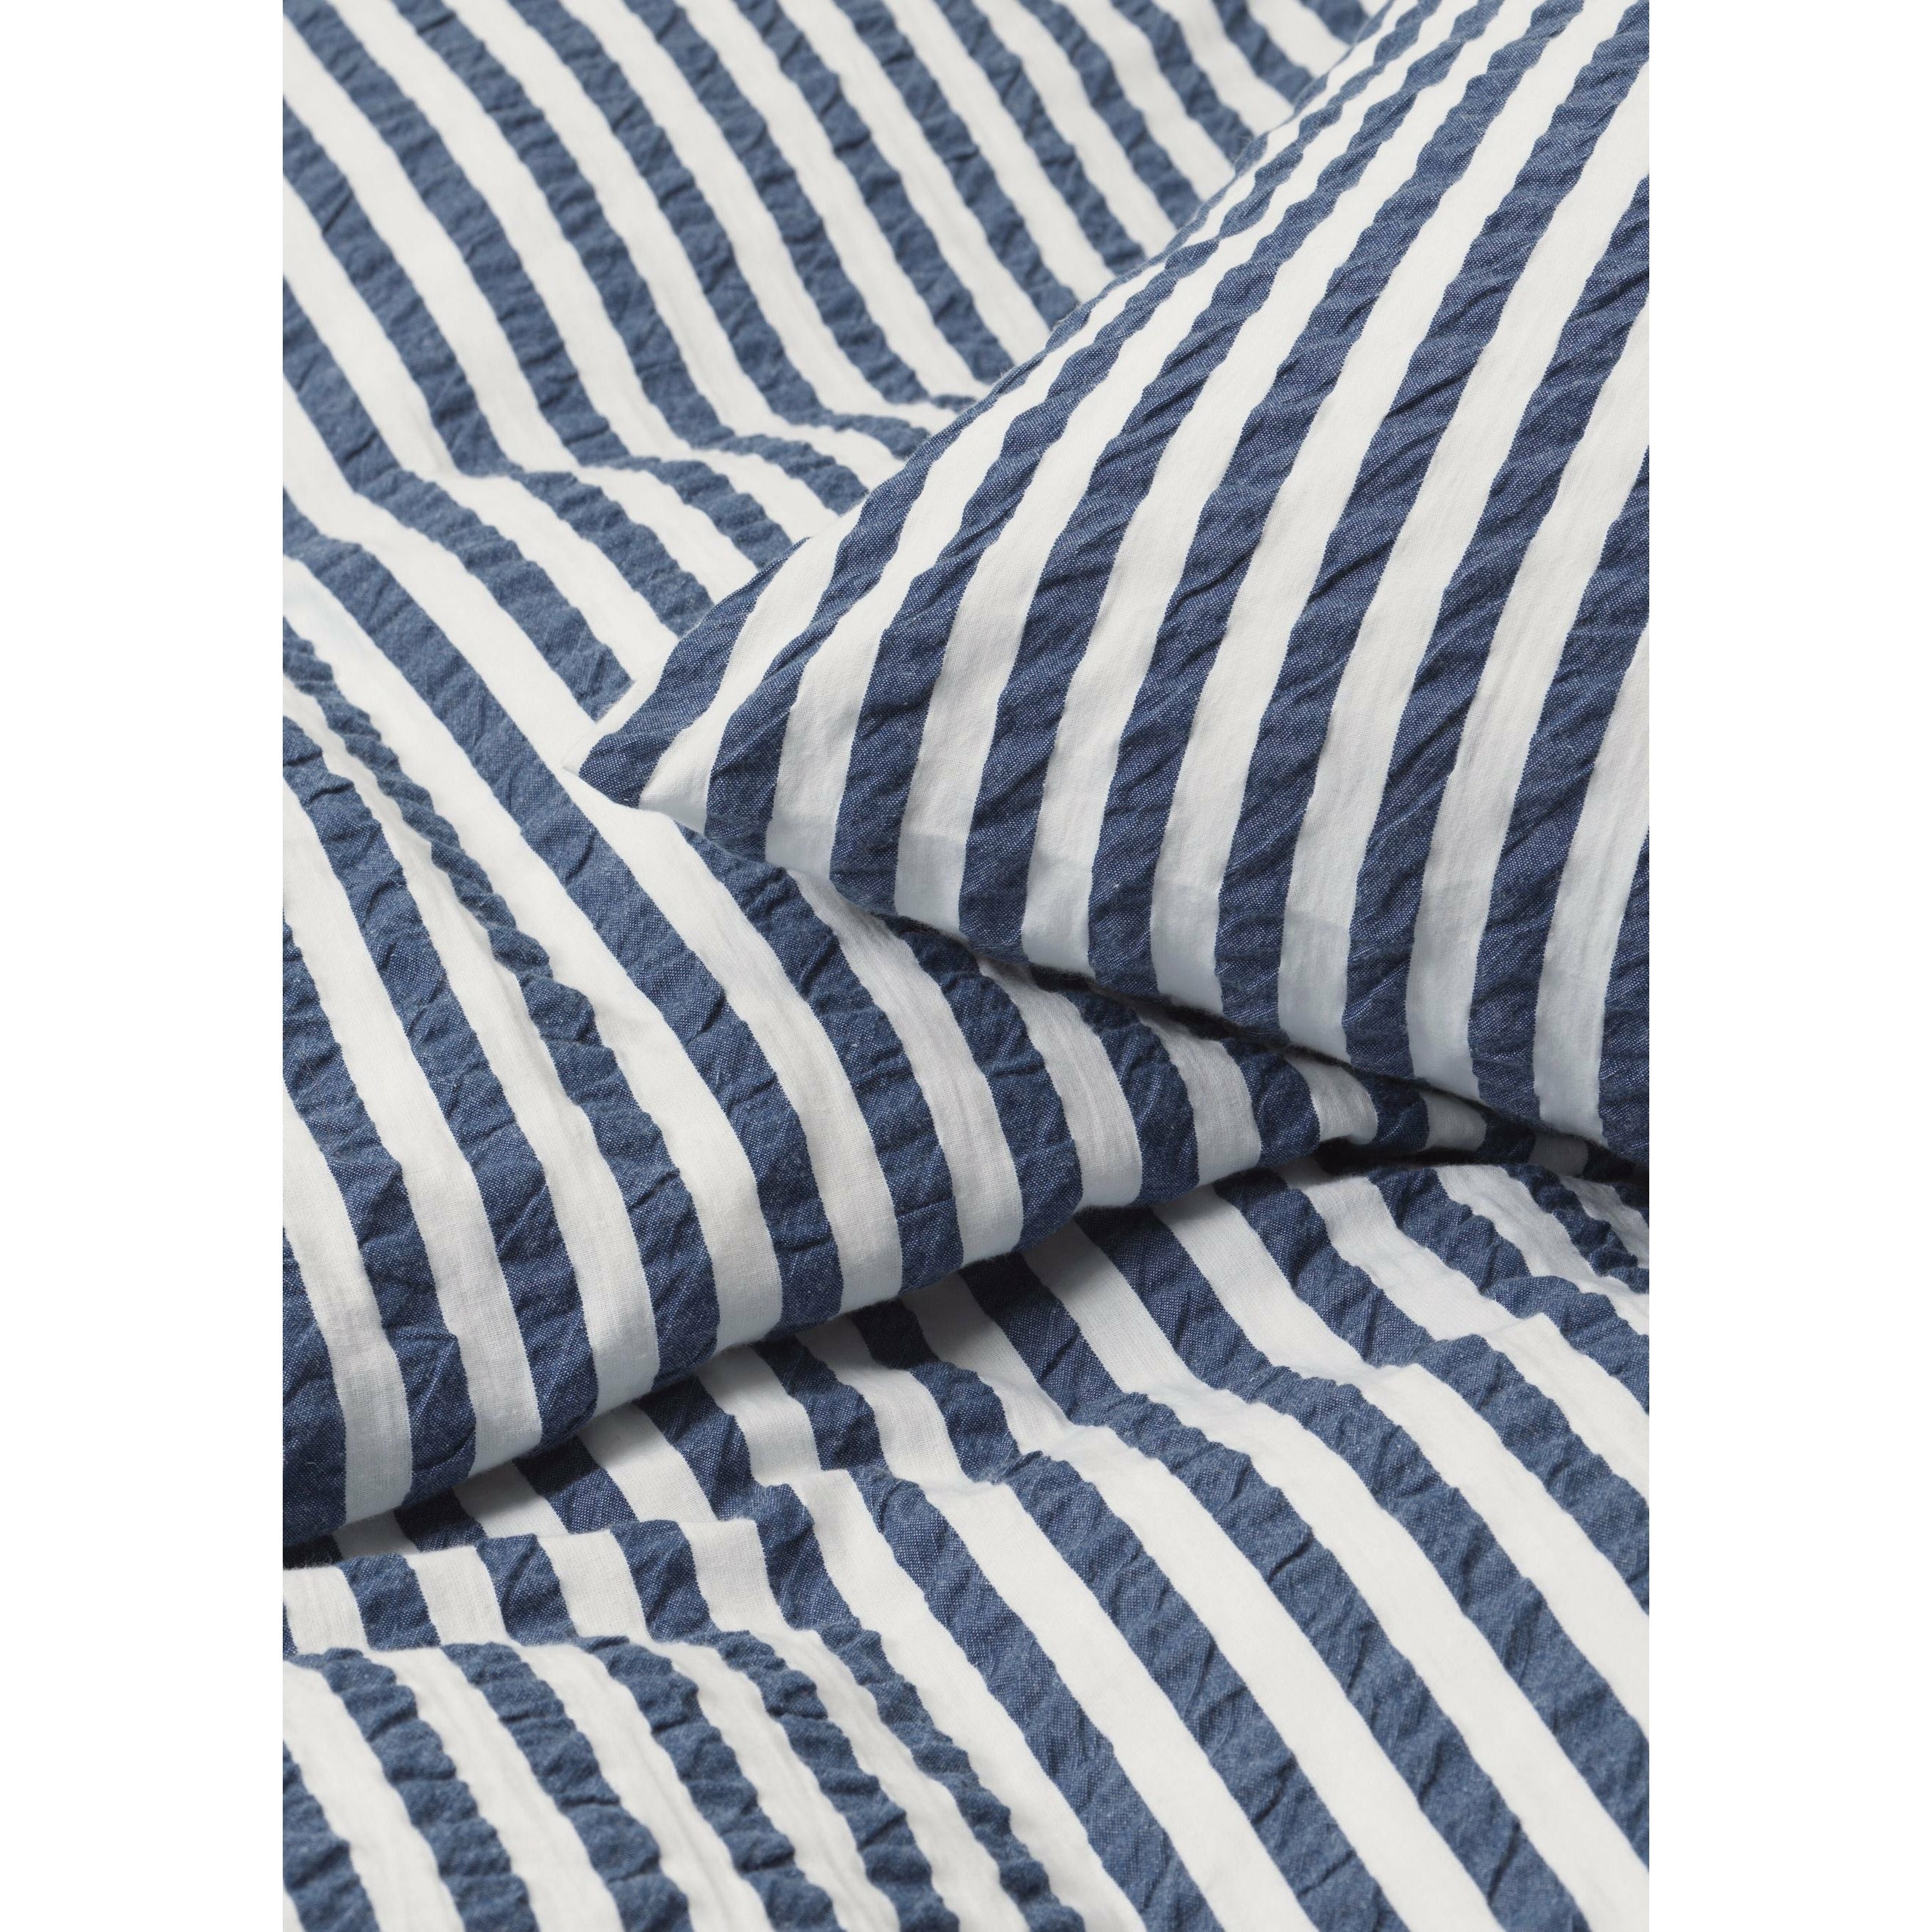 JUNA Bæk y Bølge Lines Bed Linen 200x220 cm, azul oscuro/blanco